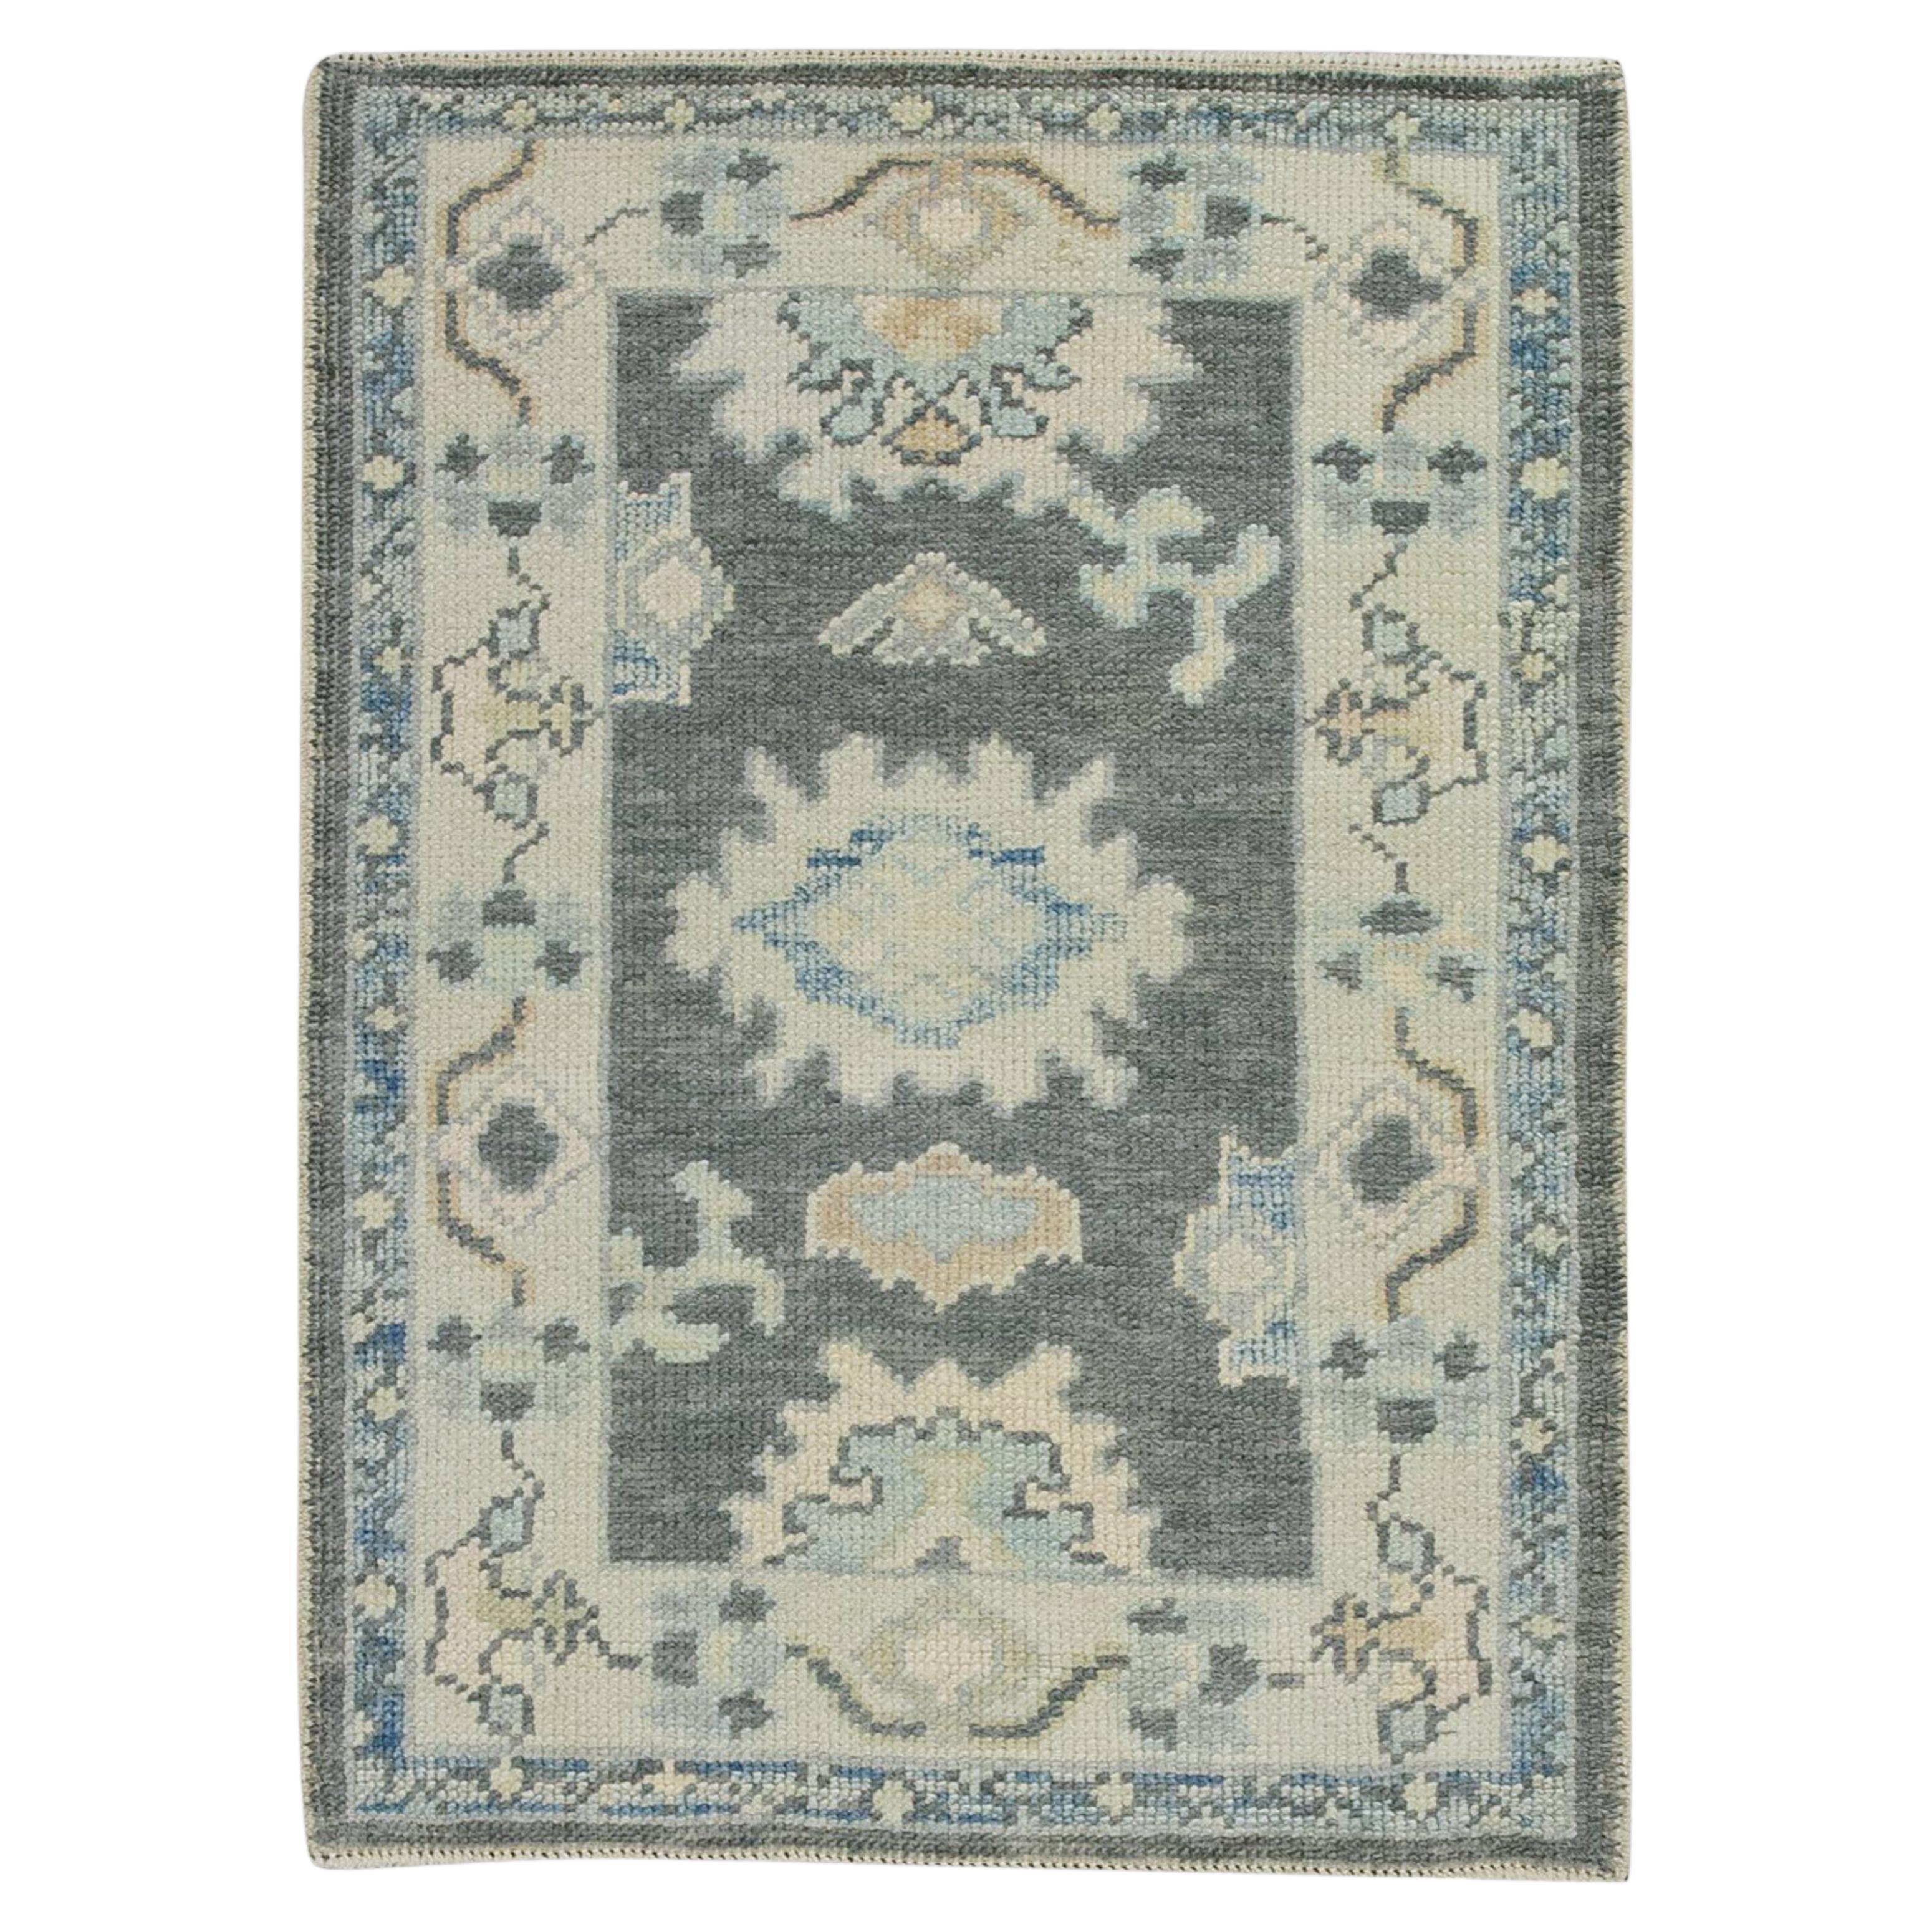 Türkischer Oushak-Teppich aus handgewebter Wolle mit grauem Blumenmuster 2'3" x 3'